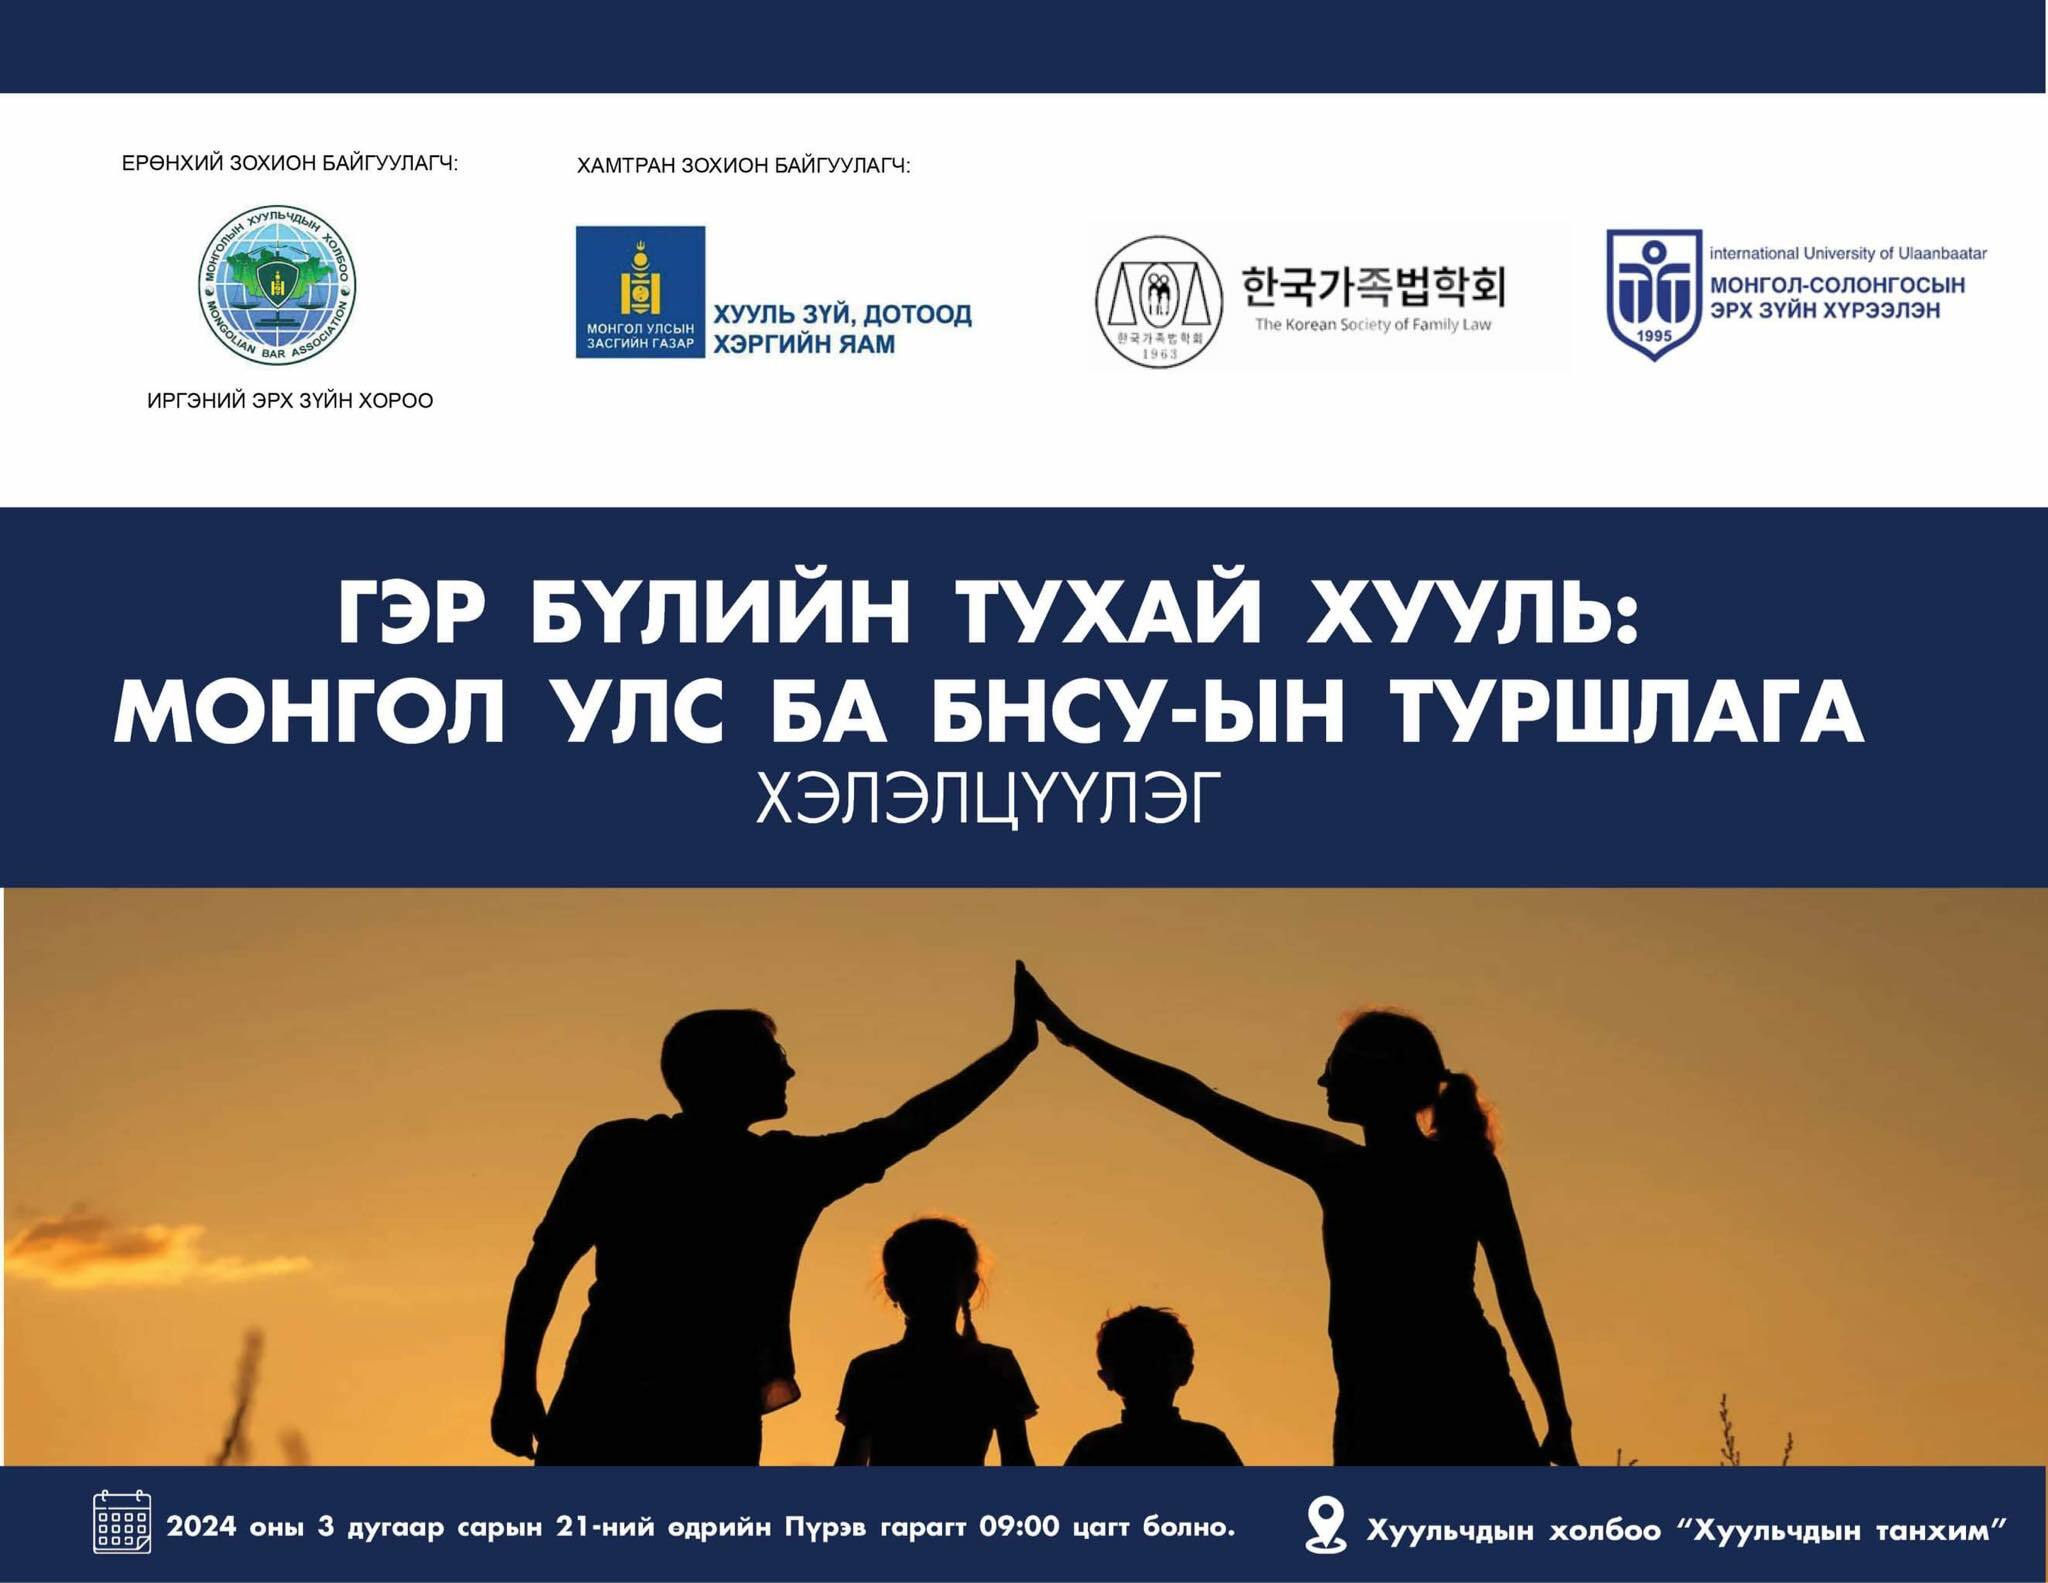 Гэр бүлийн тухай хууль: Монгол улс ба БНСУ-ын туршлага сэдэвт хэлэлцүүлэг